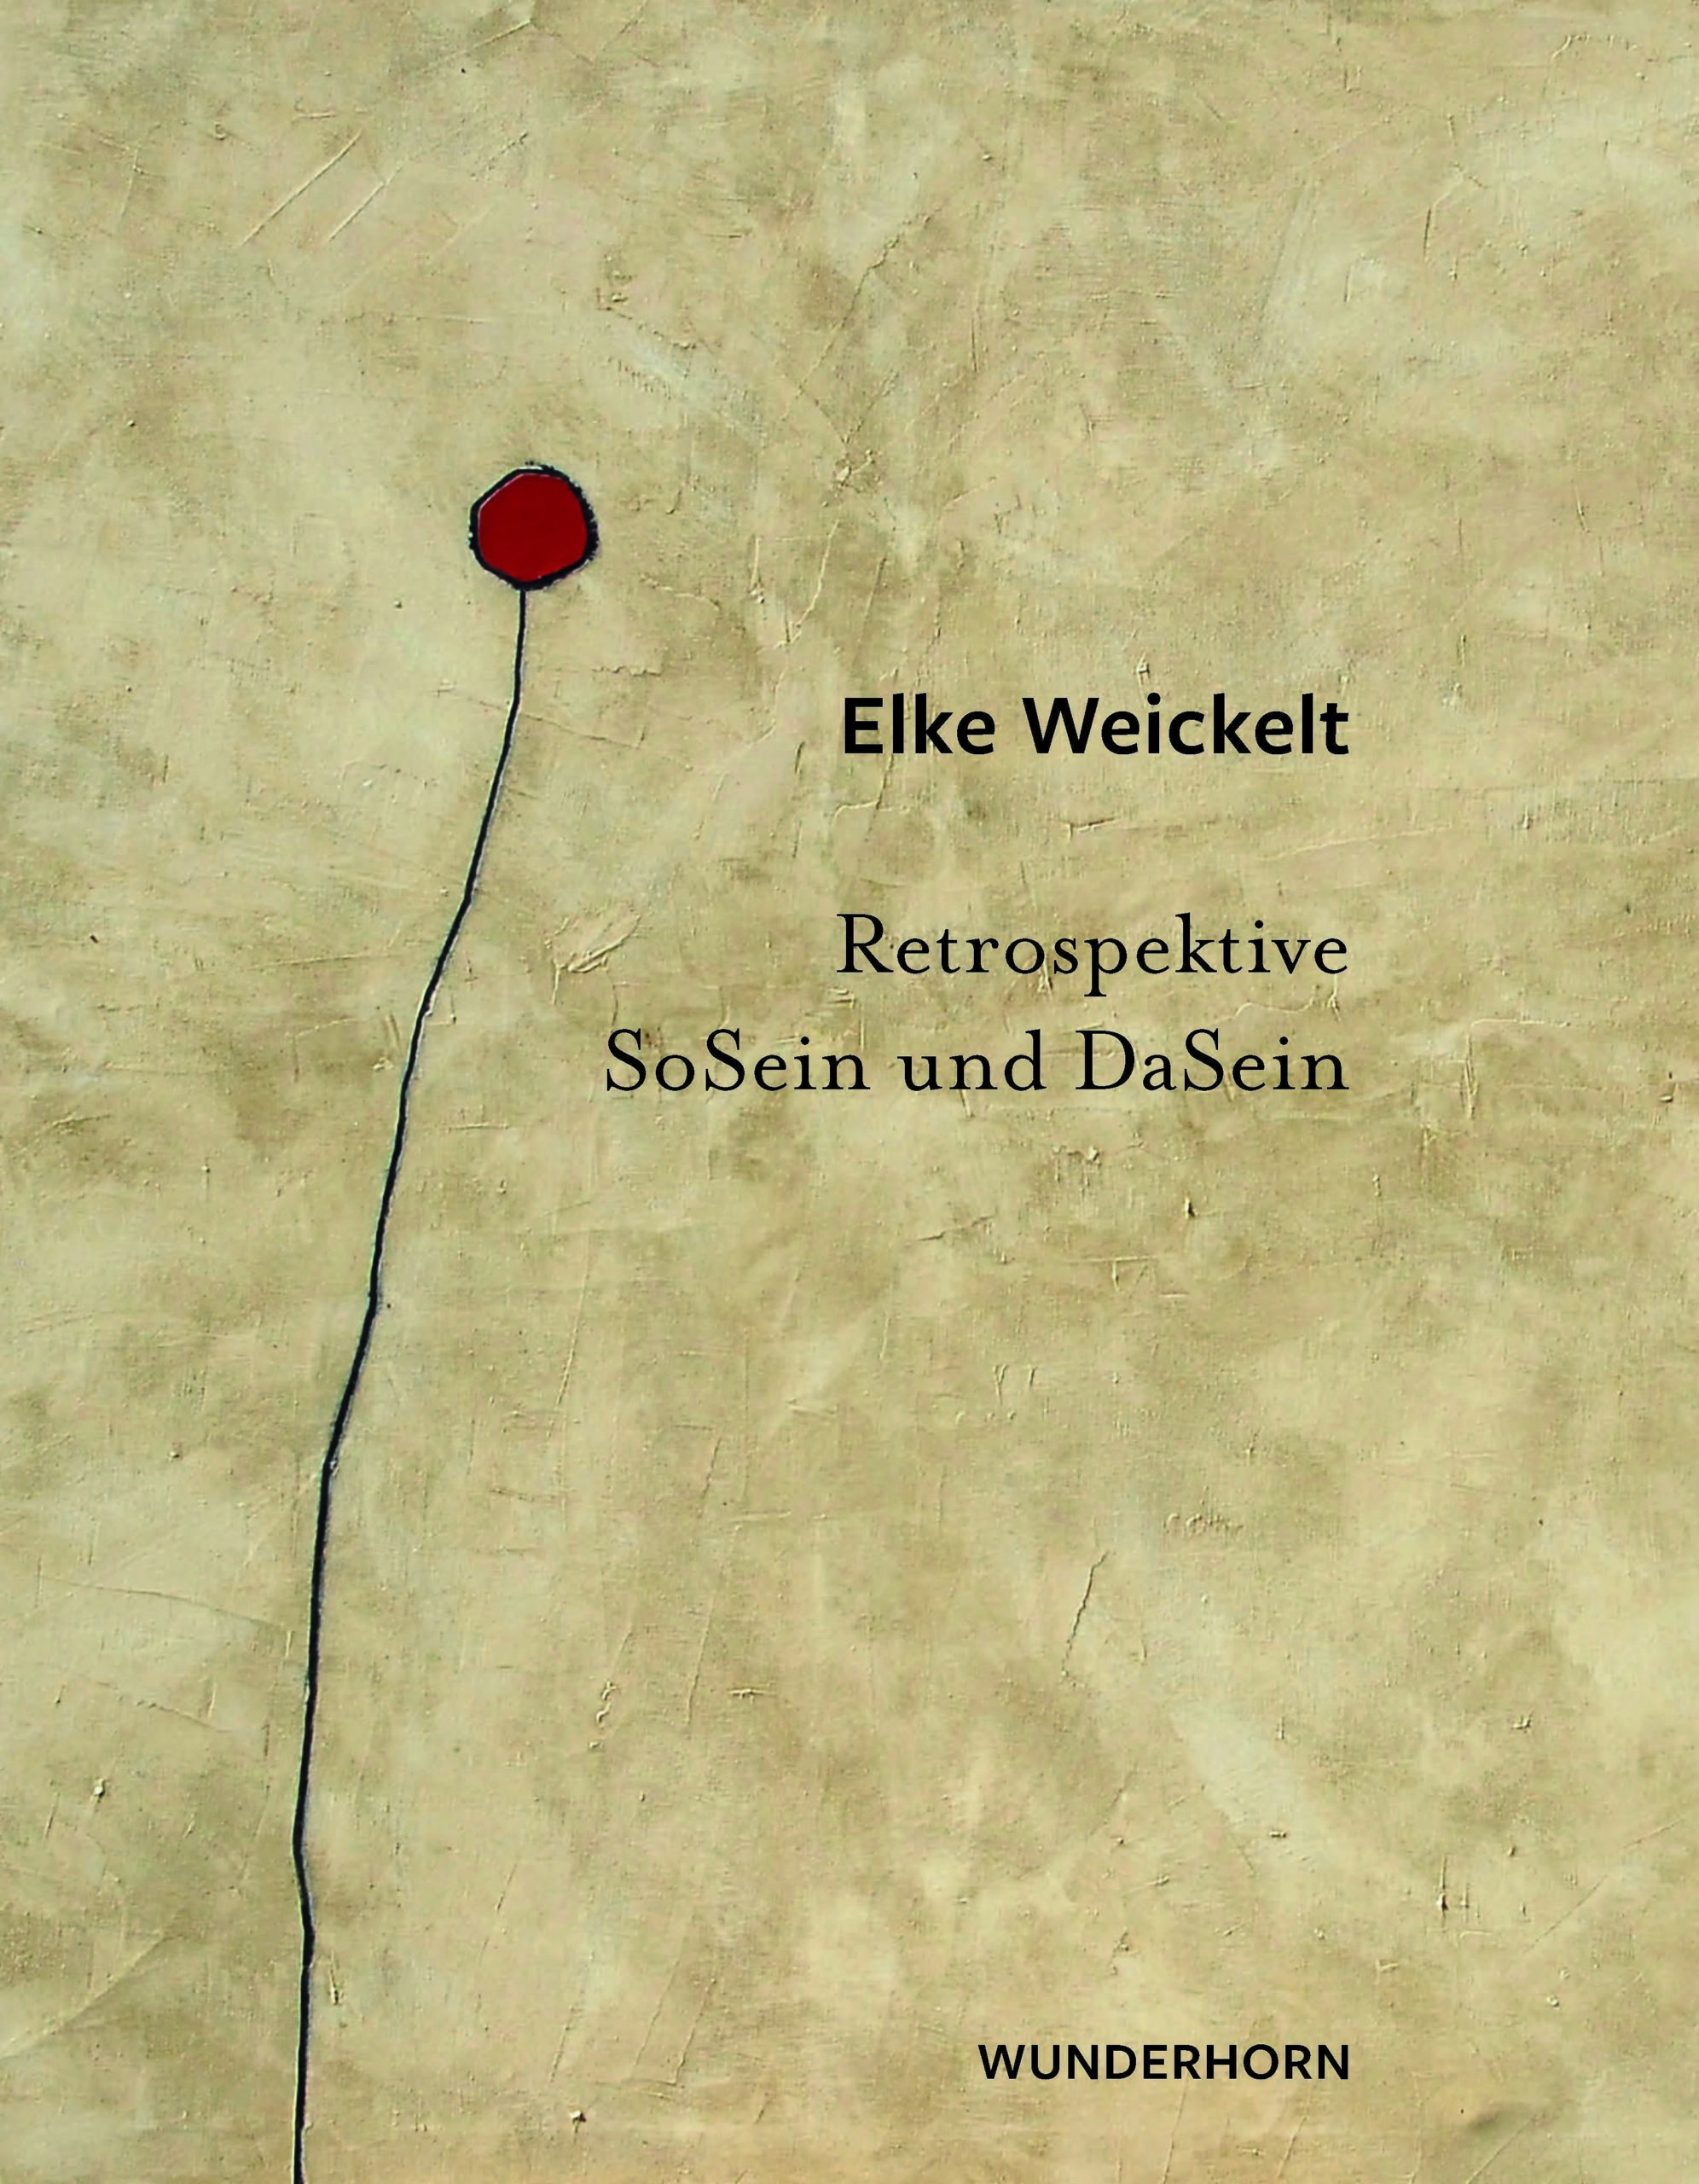 Katalog und Ausstellung von Elke Weickelt